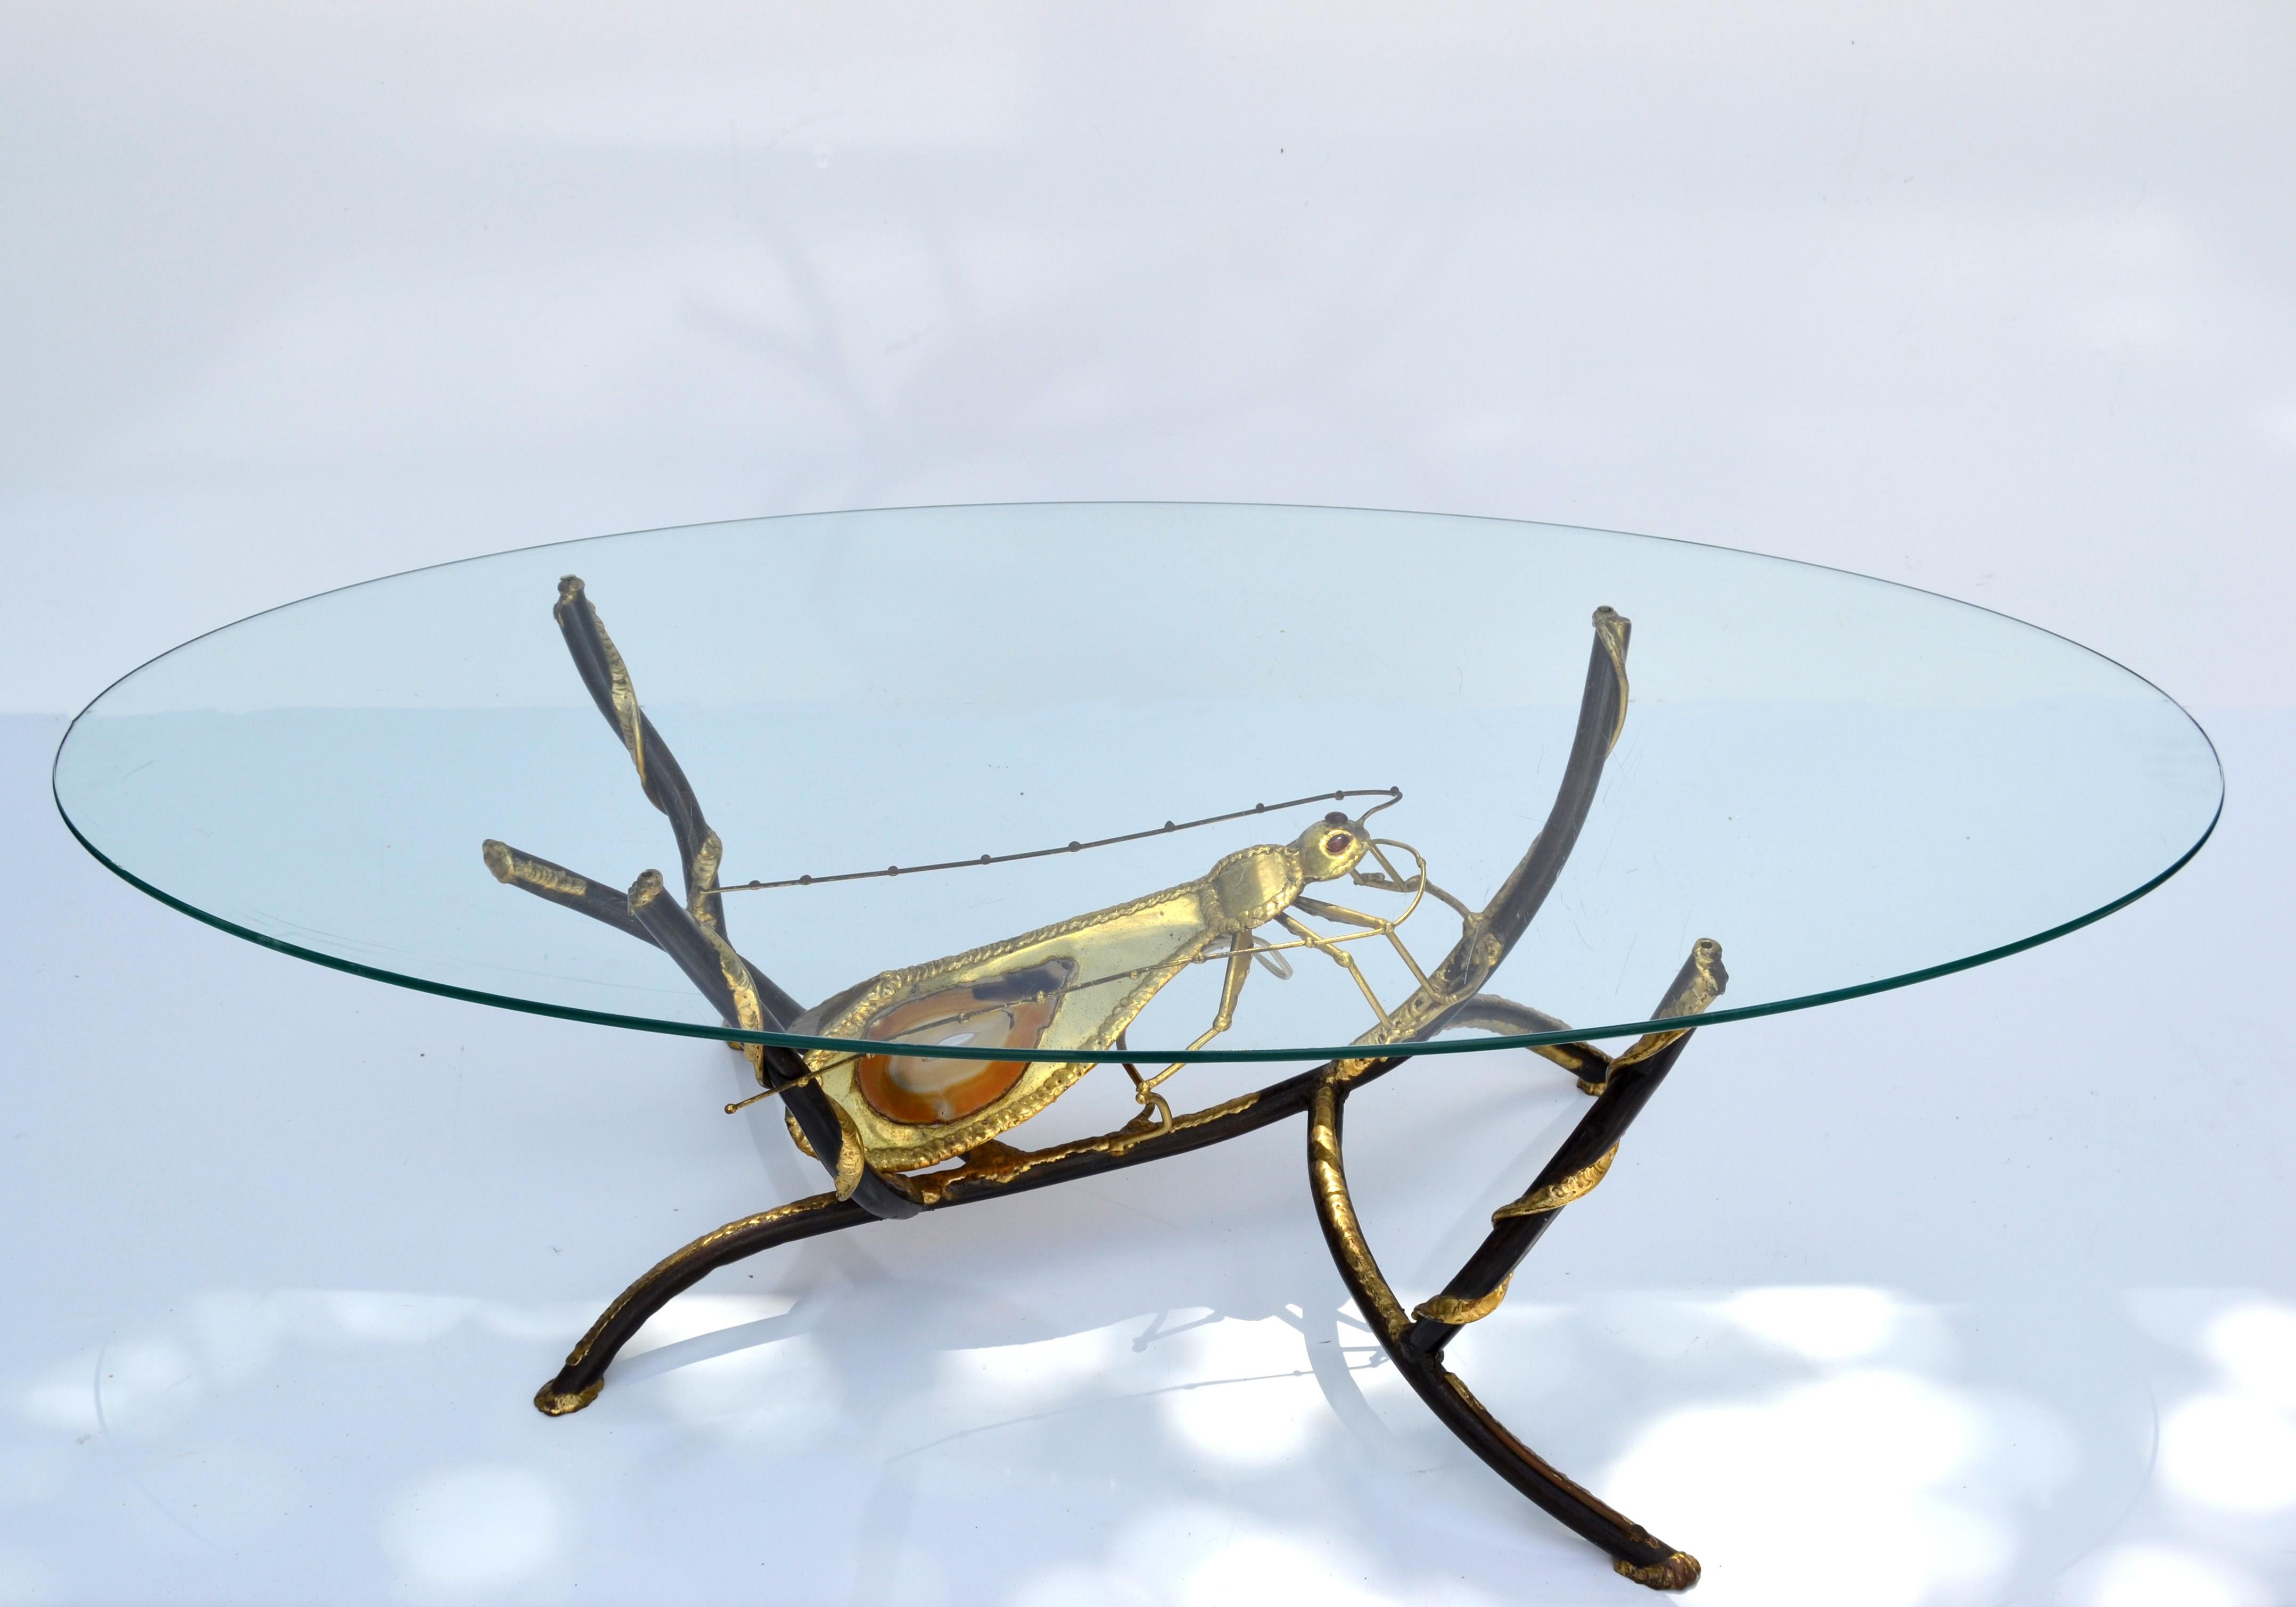 L'AtelierDuval-Brasseur, signé Henri Fernandez, arbore un cerf-volant éclairé avec deux agates pour une table basse inhabituelle, élégante et rare, complétée par un plateau ovale en verre transparent.
Câblée pour les États-Unis et en état de